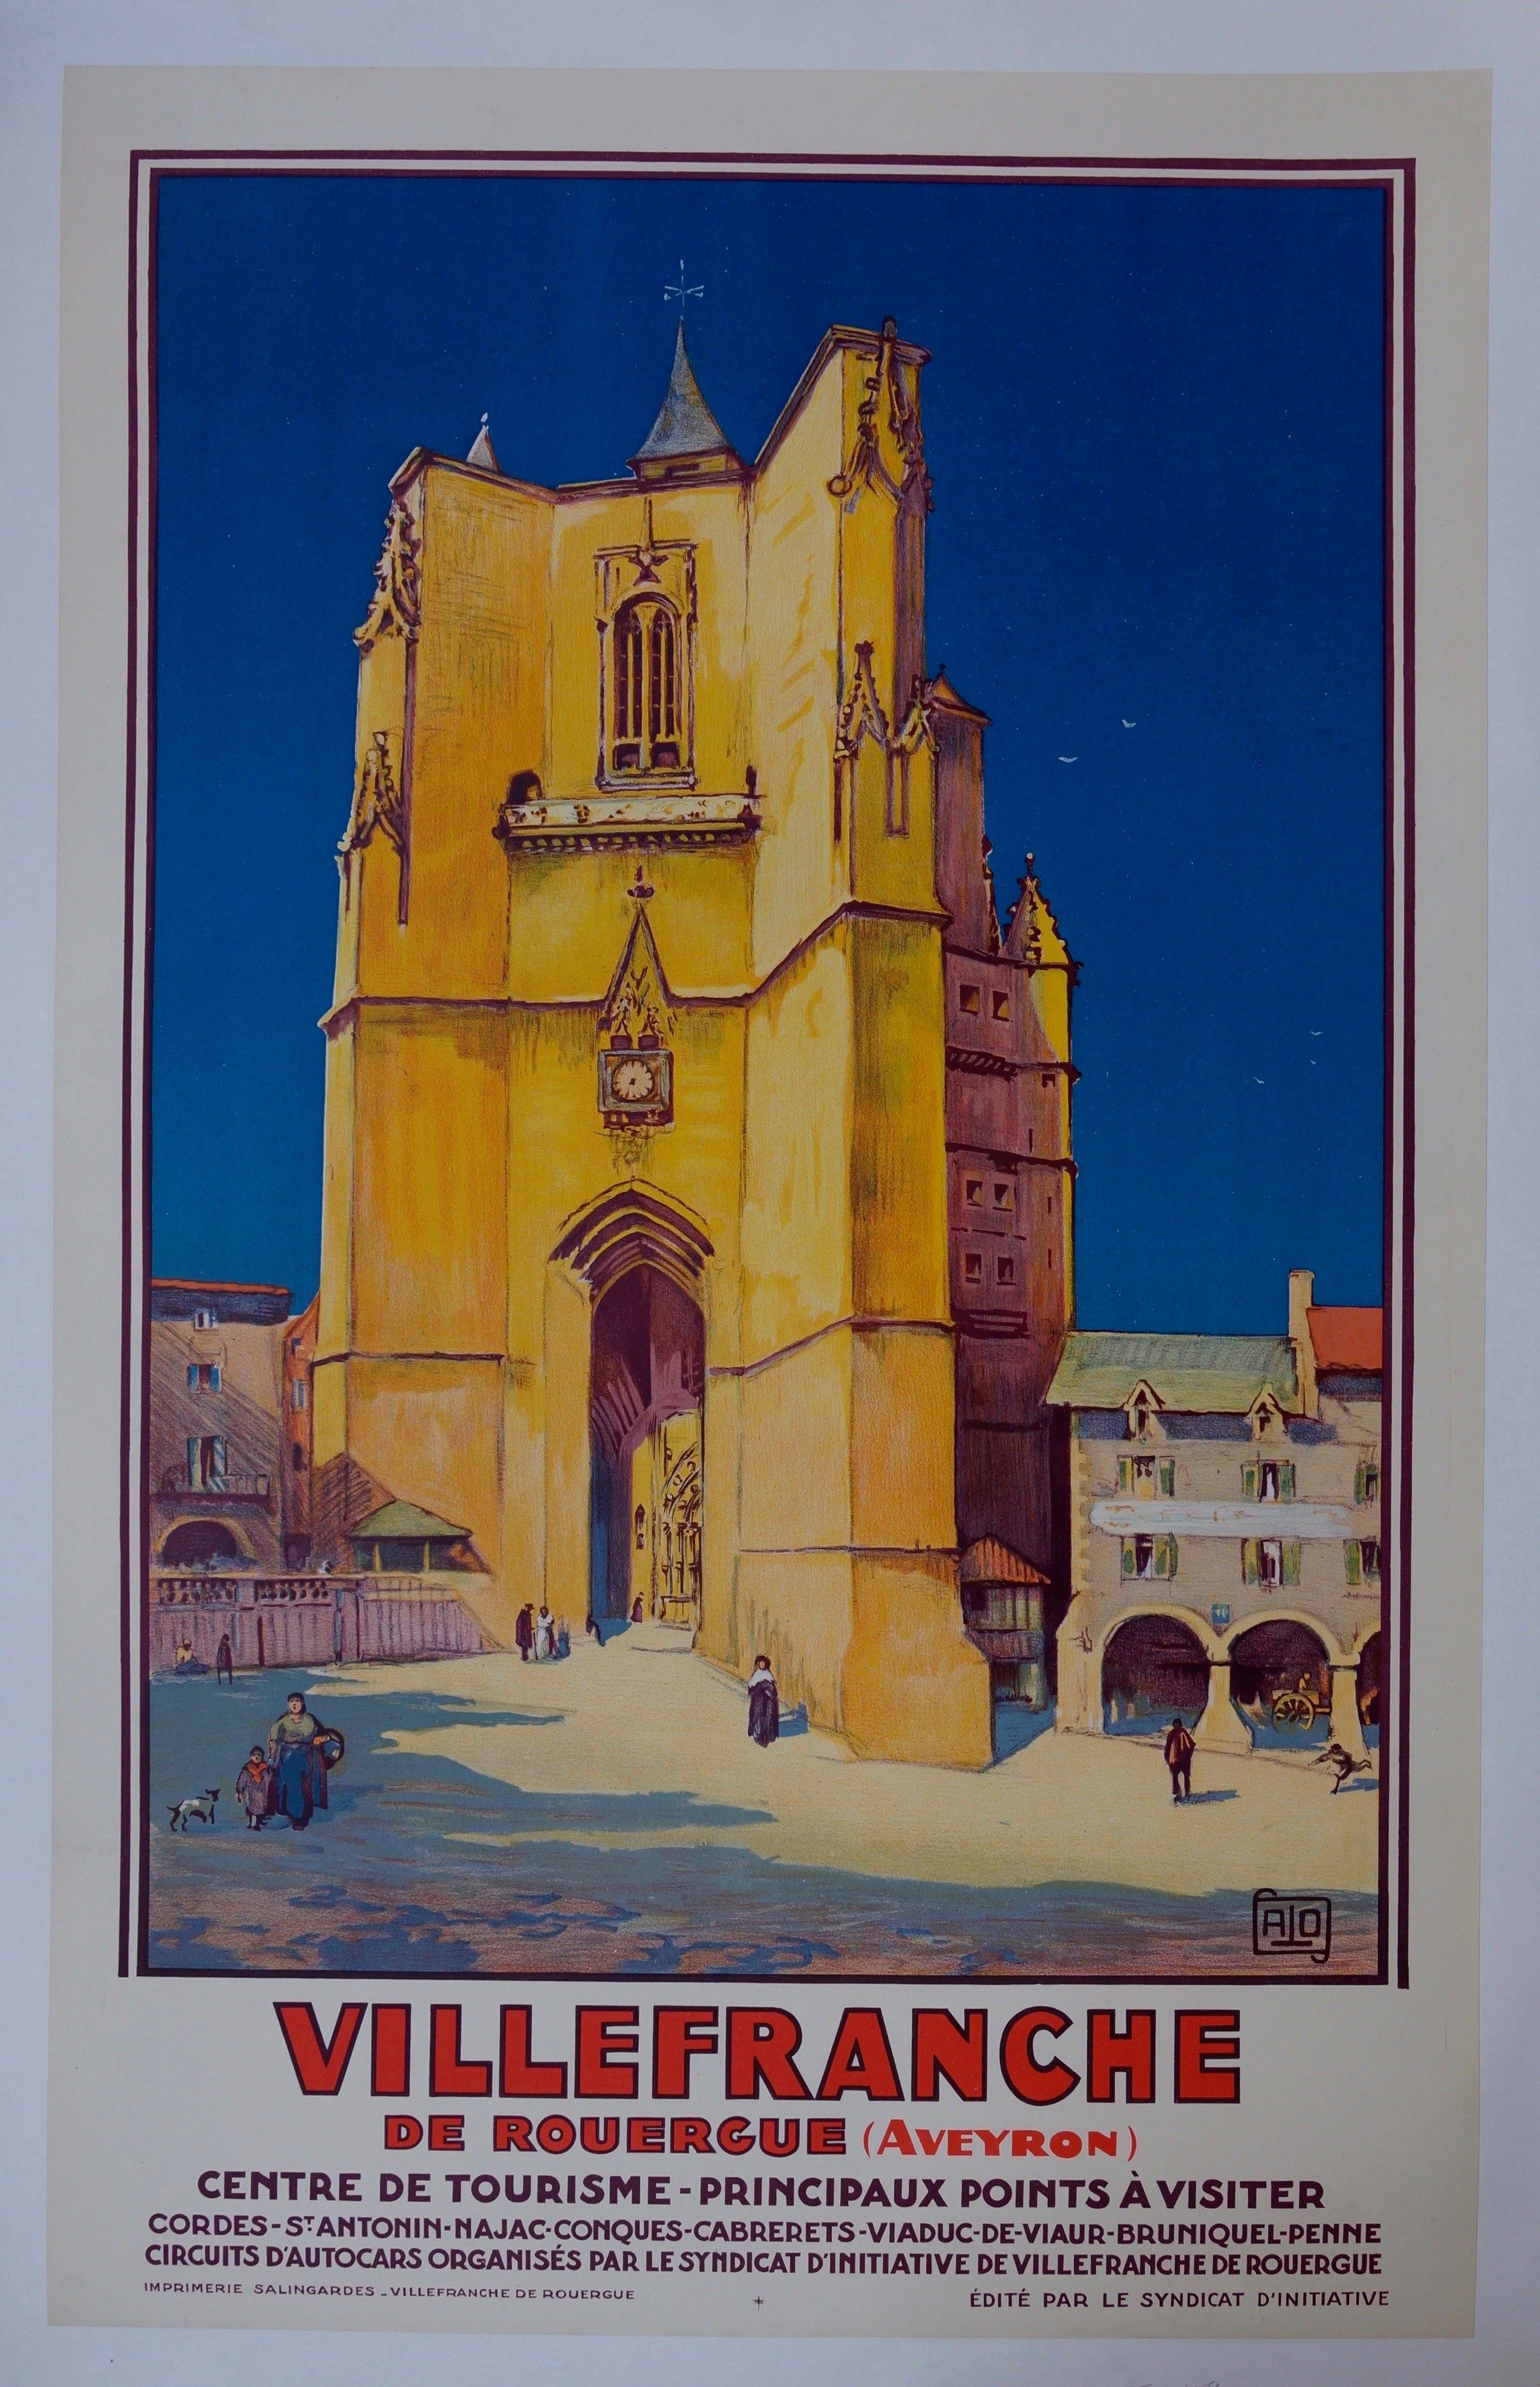 Villefranche-de-Rouergue Travel Poster